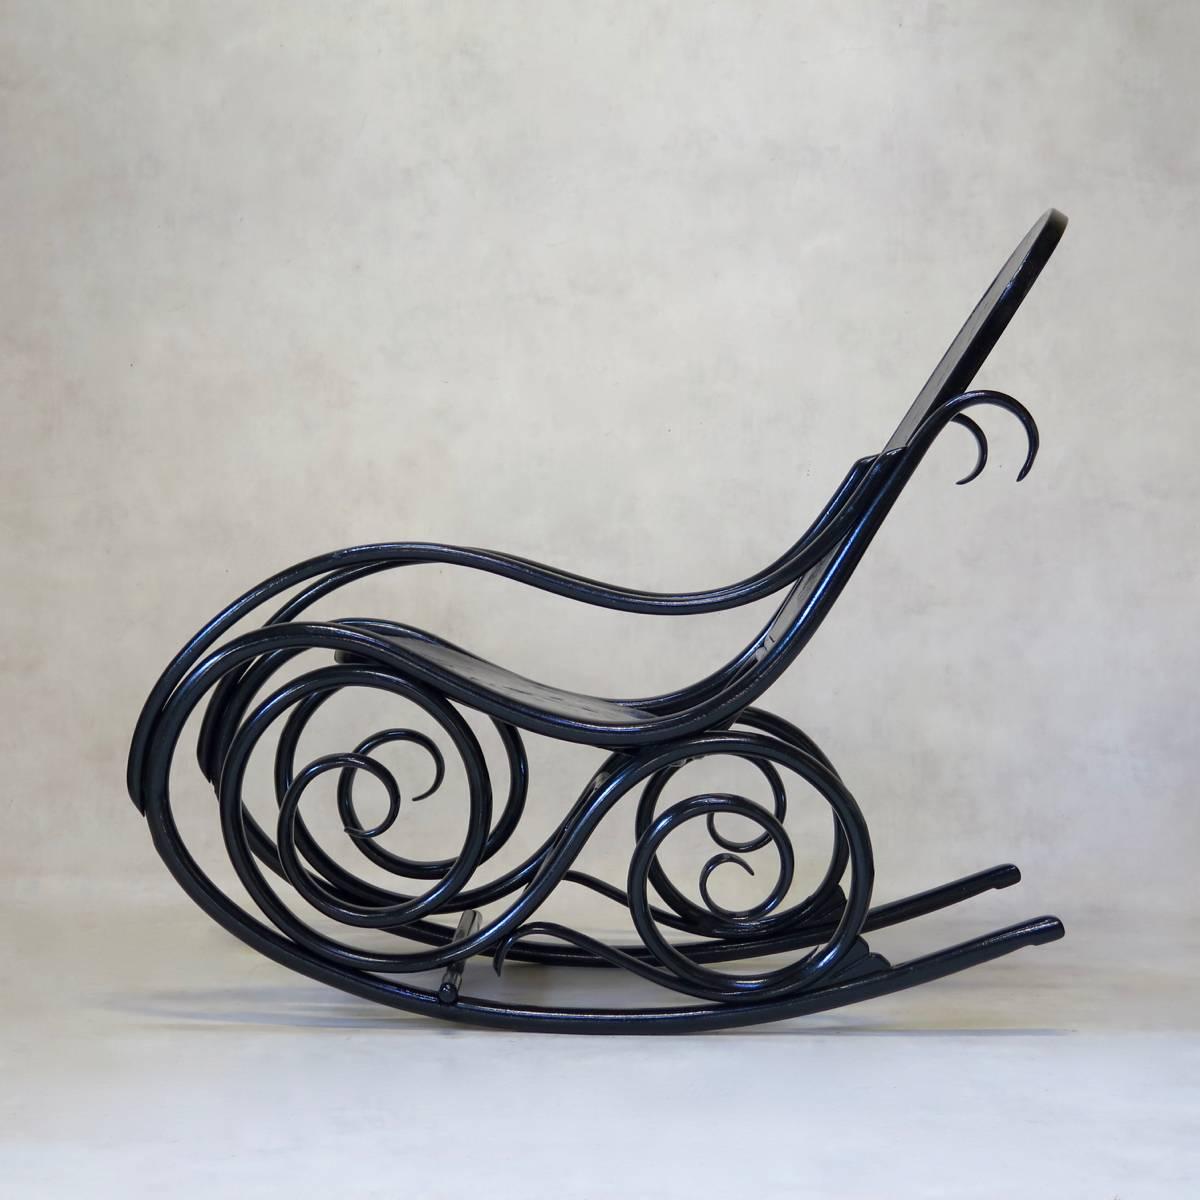 Klassischer Schaukelstuhl aus Bugholz im Stil der Wiener Secession mit geprägtem Holzsitz und -rücken und schönem, geschwungenem Fuß. Neu lackiert in glänzendem Schwarz.